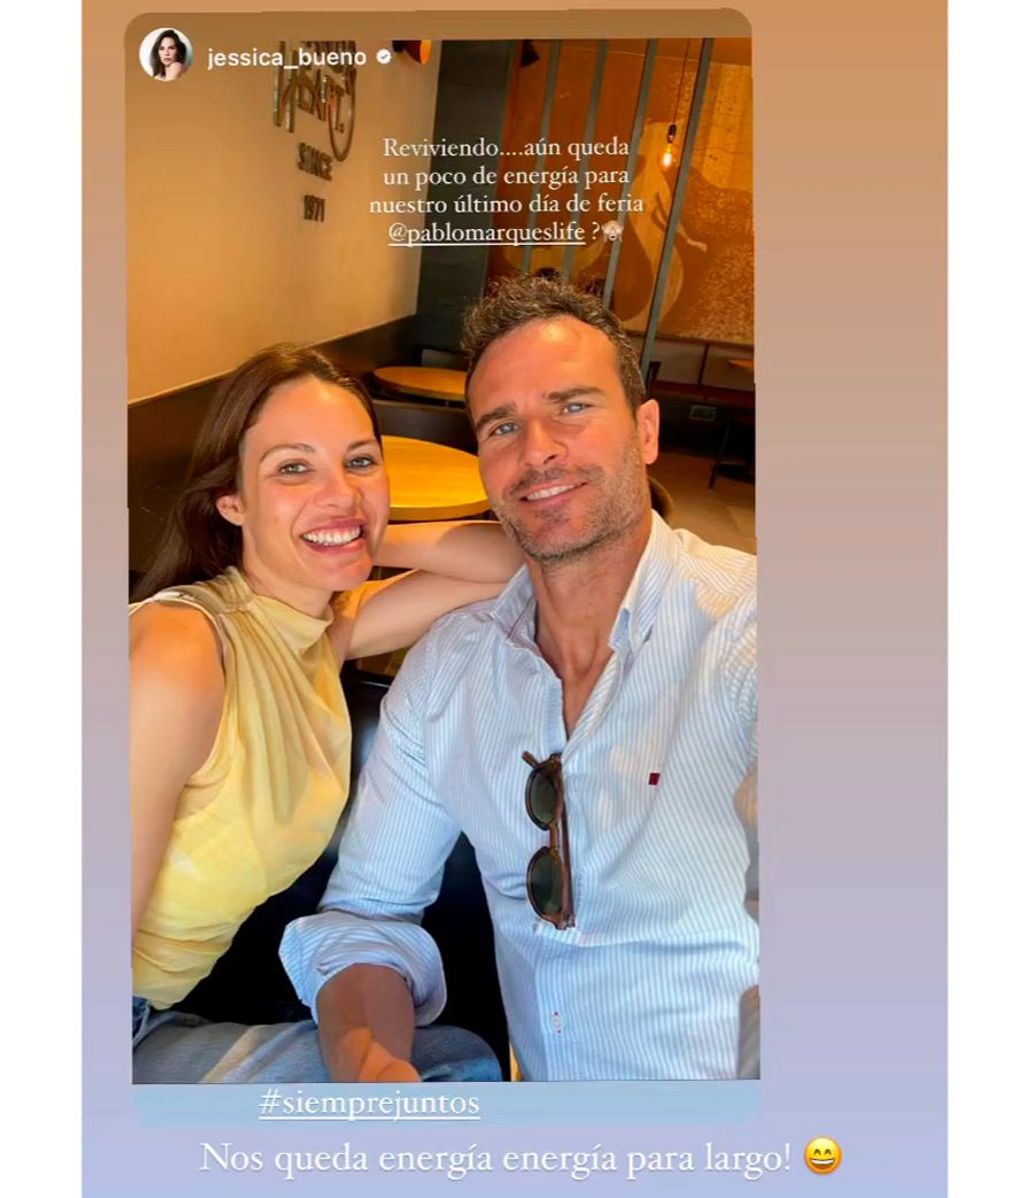 Pablo Marqués y Jessica Bueno oficializan su relación en Sevilla, tierra de la modelo